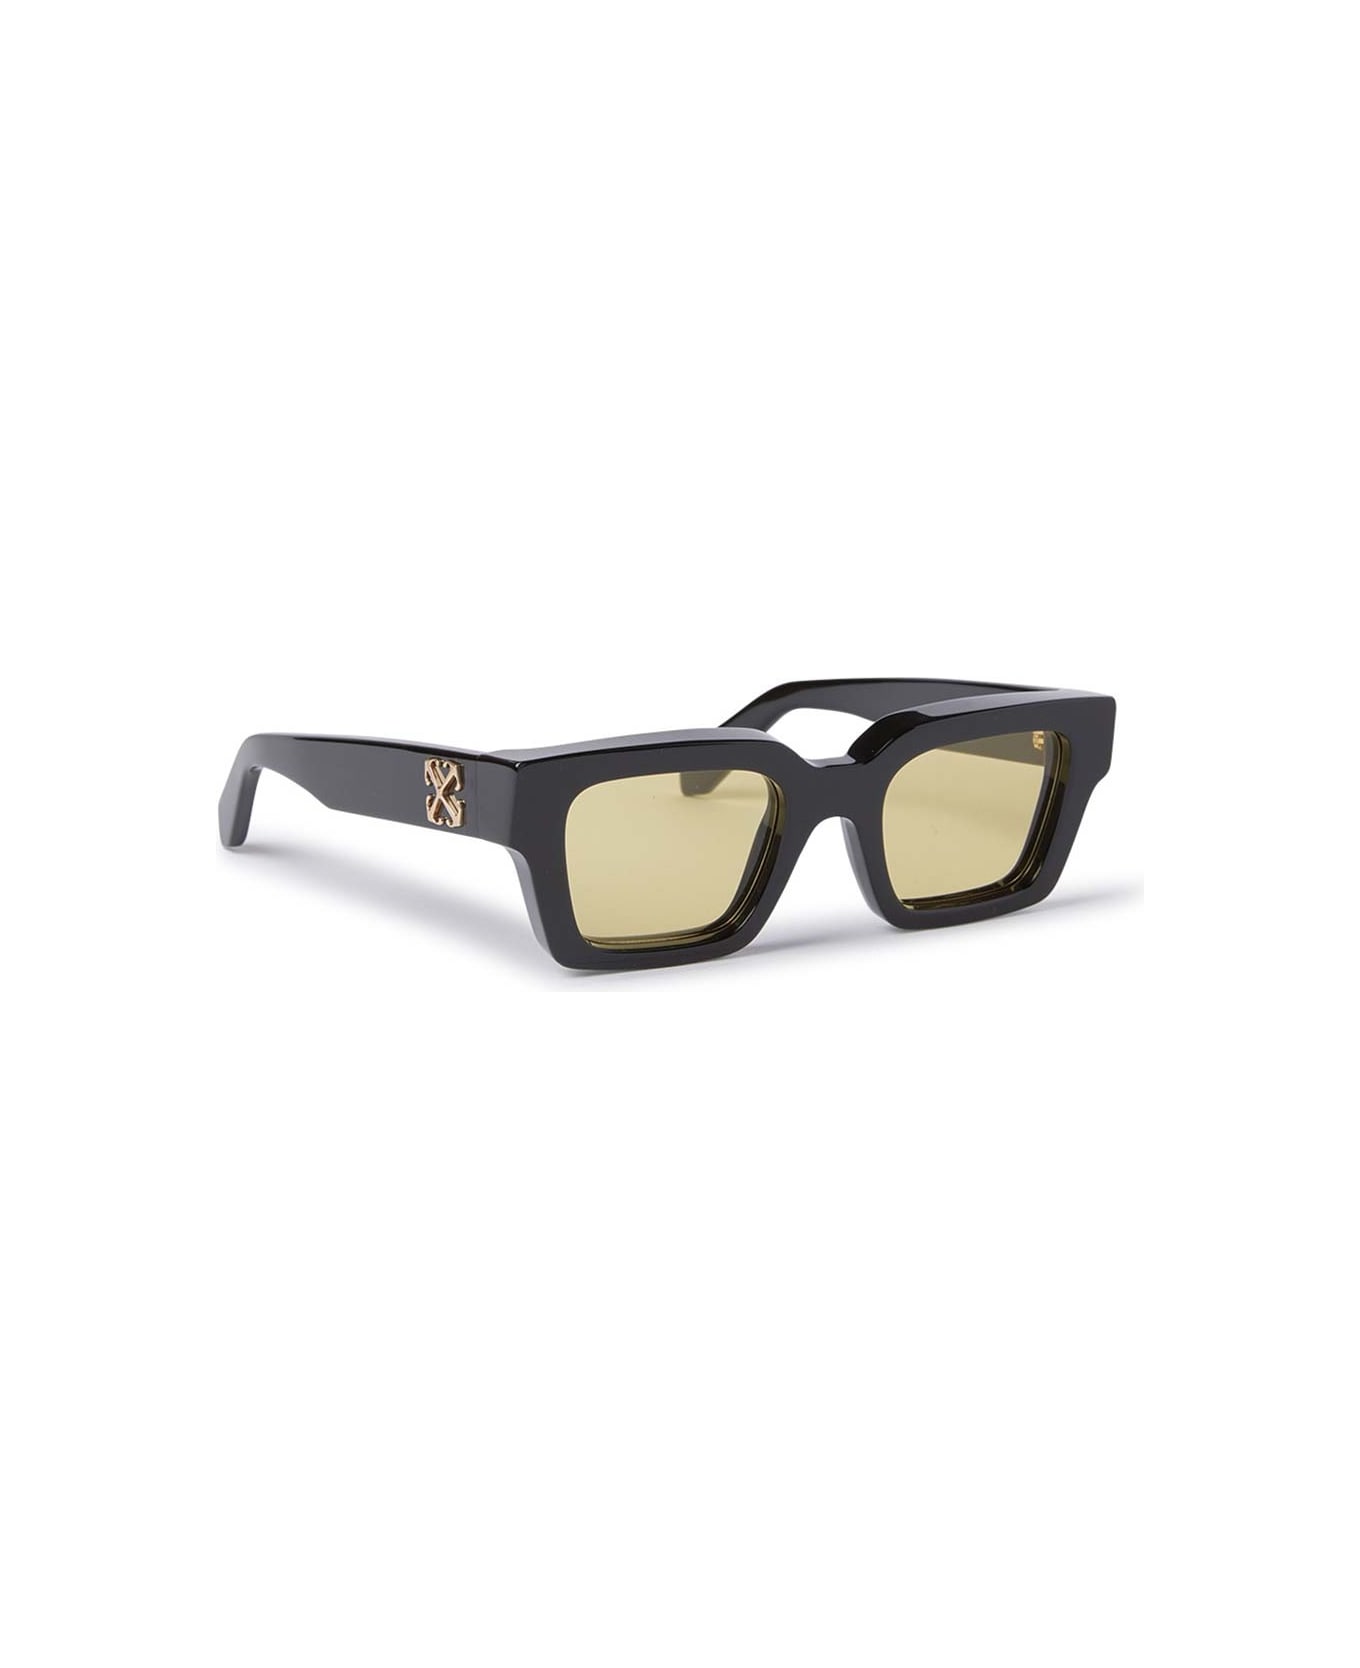 Off-White Sunglasses - Nero/Gialla